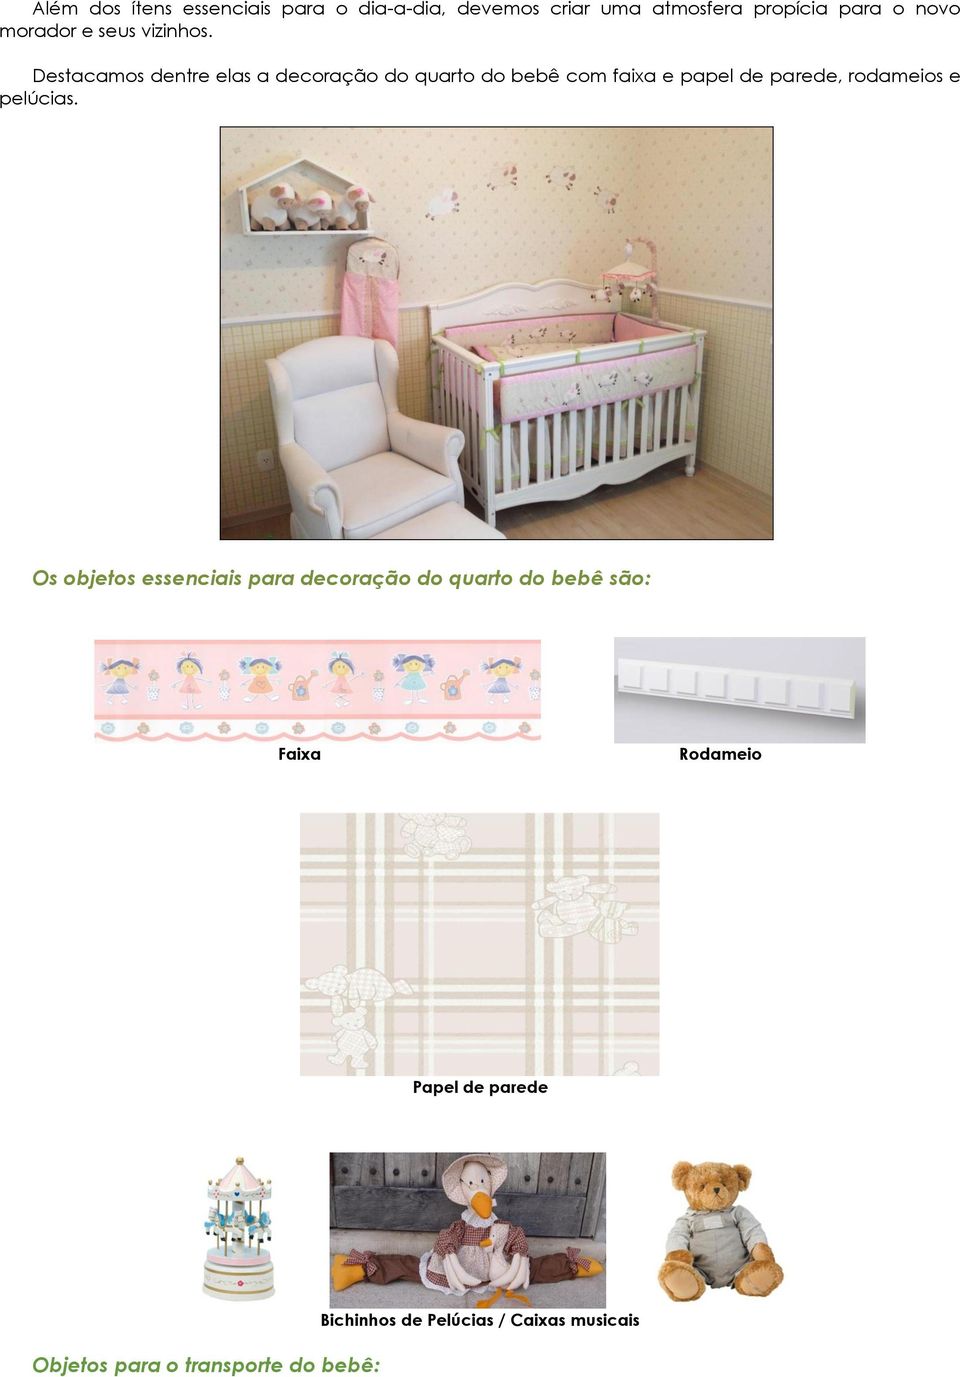 Destacamos dentre elas a decoração do quarto do bebê com faixa e papel de parede, rodameios e